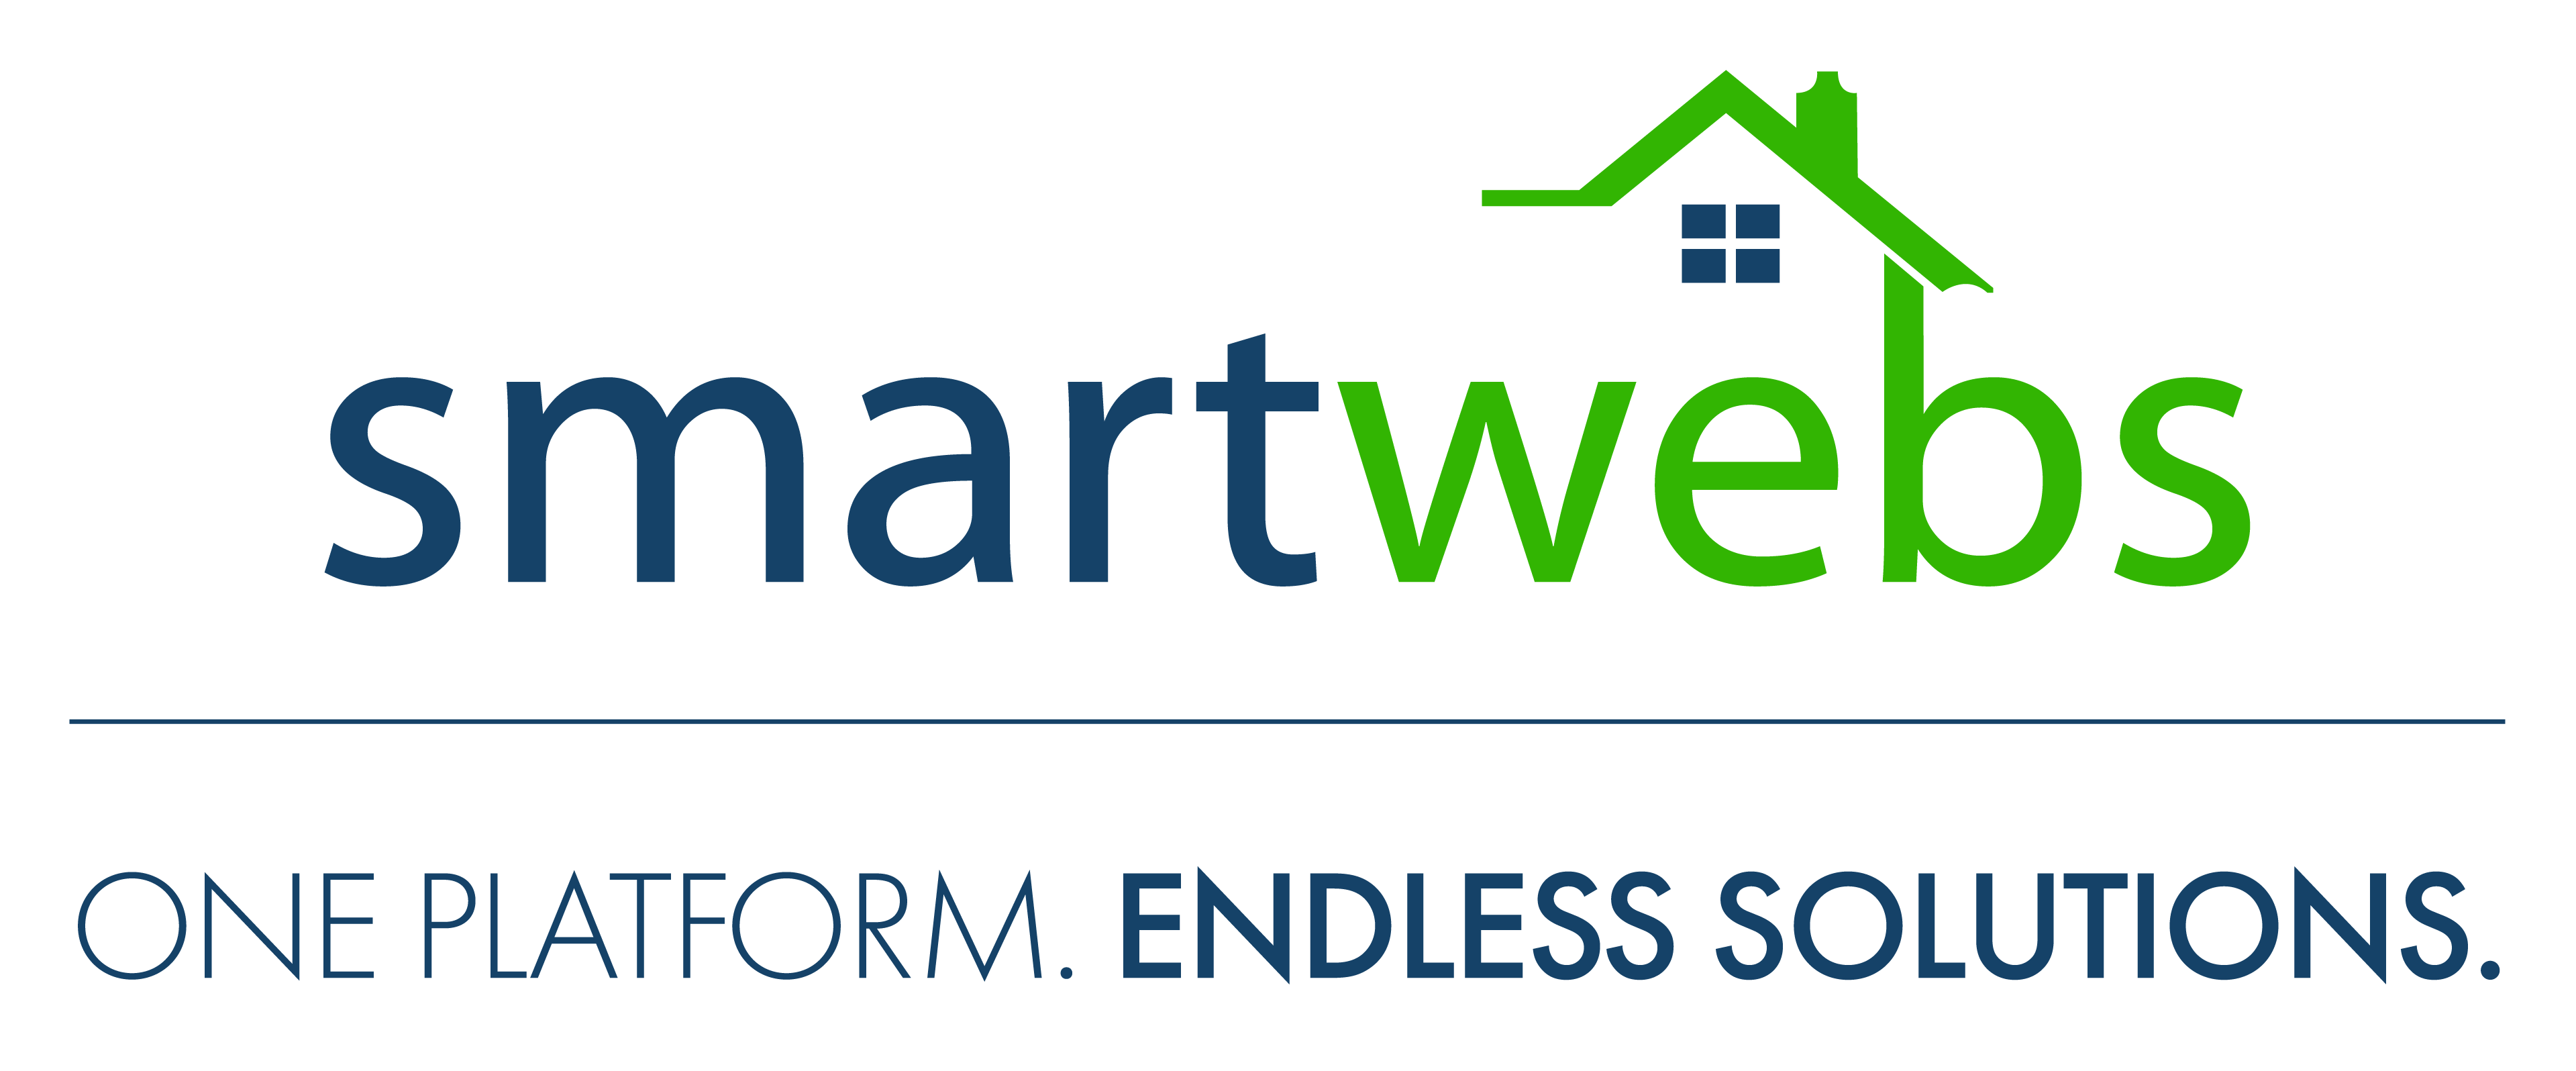 NEW-Smartwebs-Logos_Smartwebs-FullColor.png